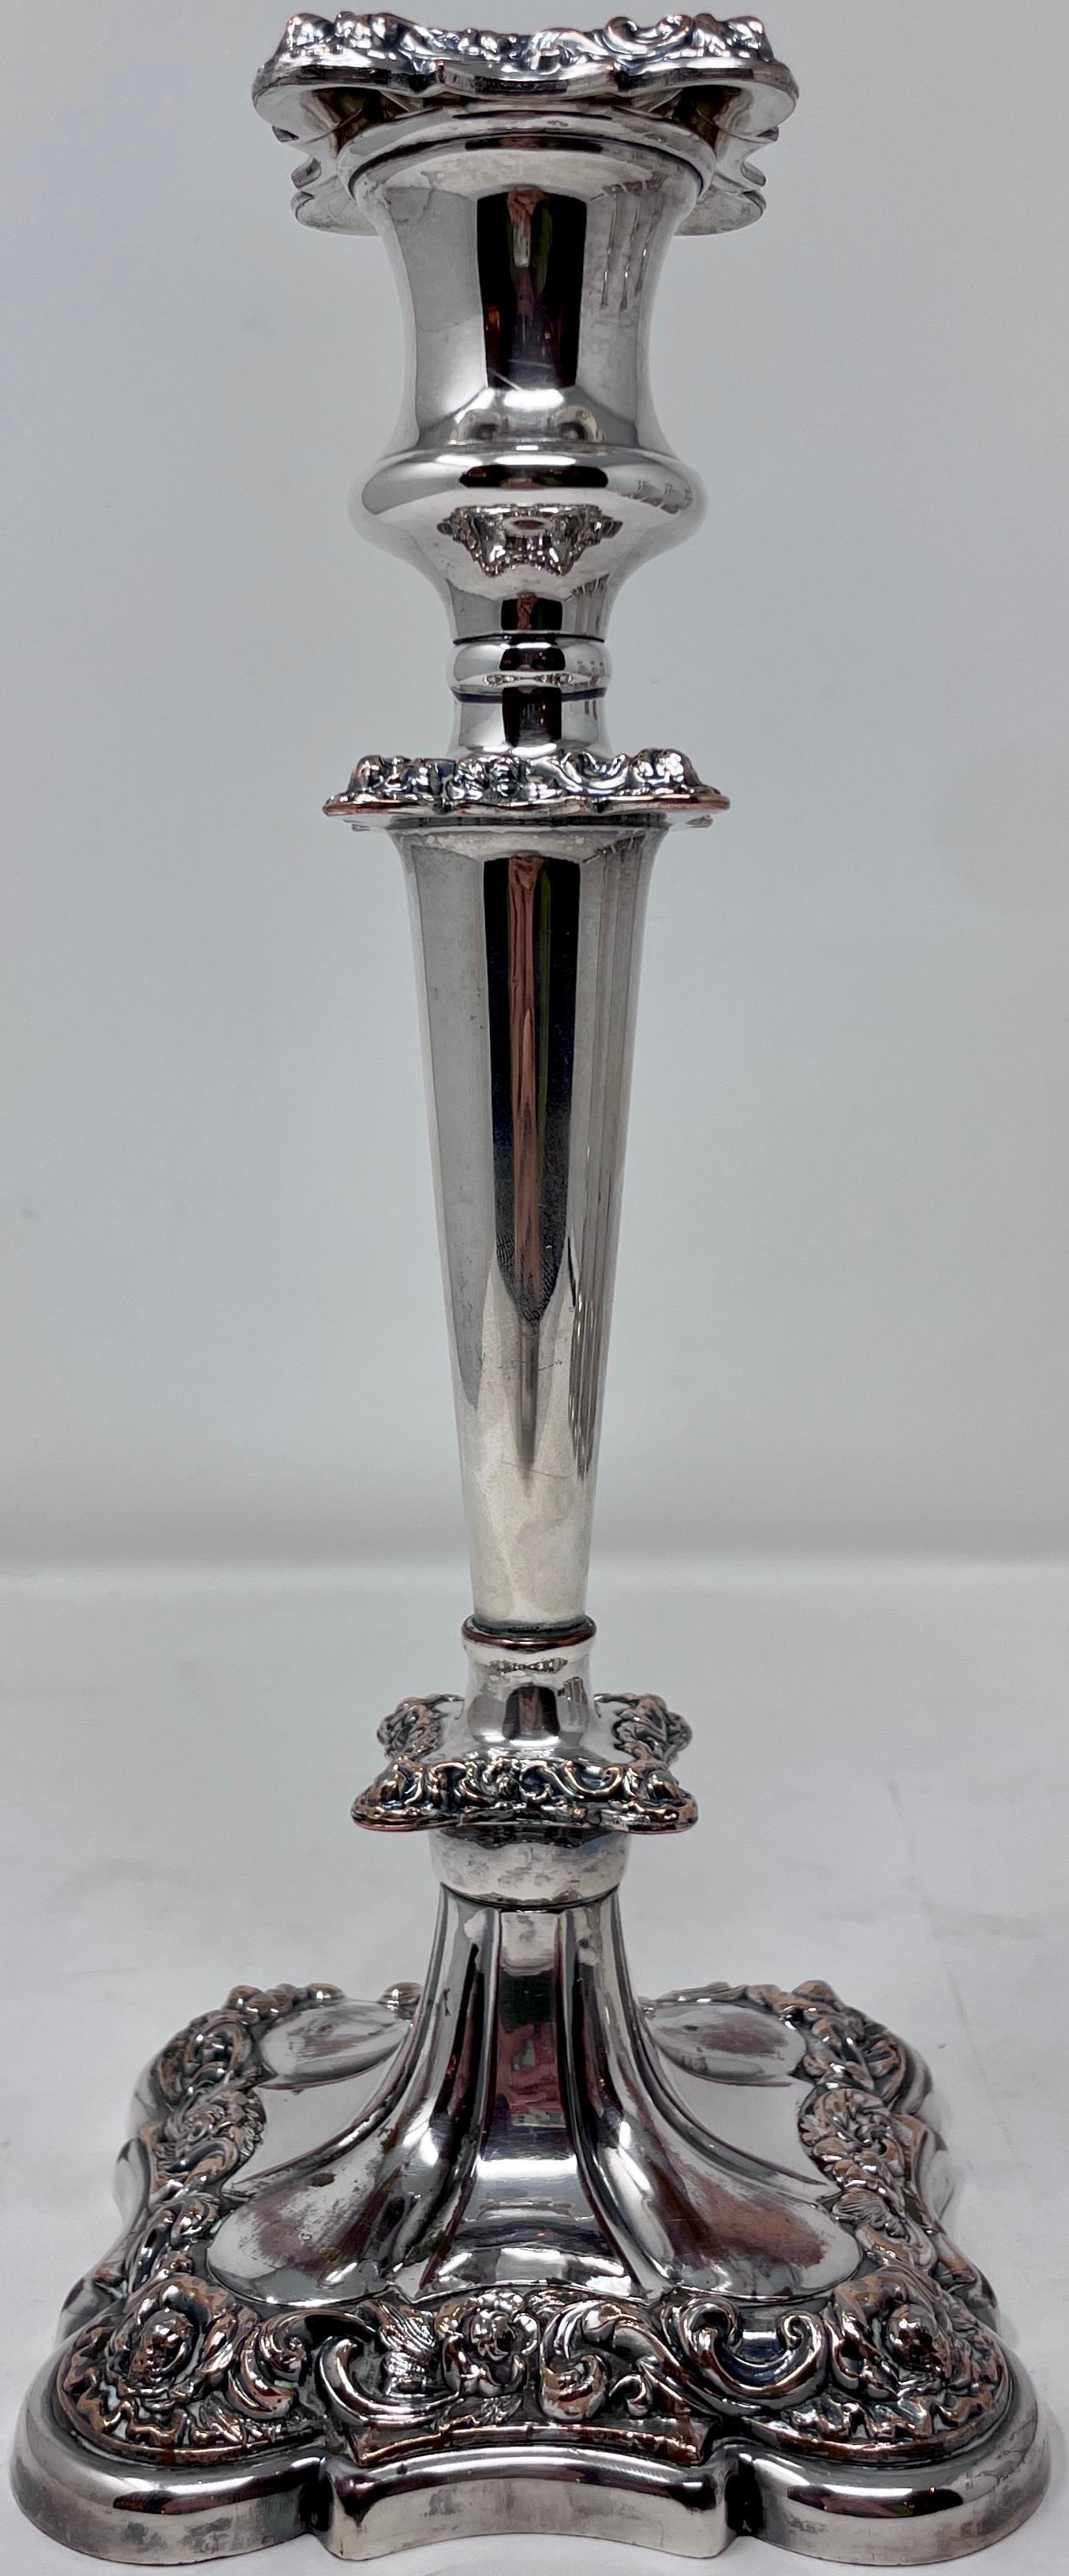 Satz von 4 antiken englischen Sheffield-Silber-Kerzenleuchtern, um 1860.